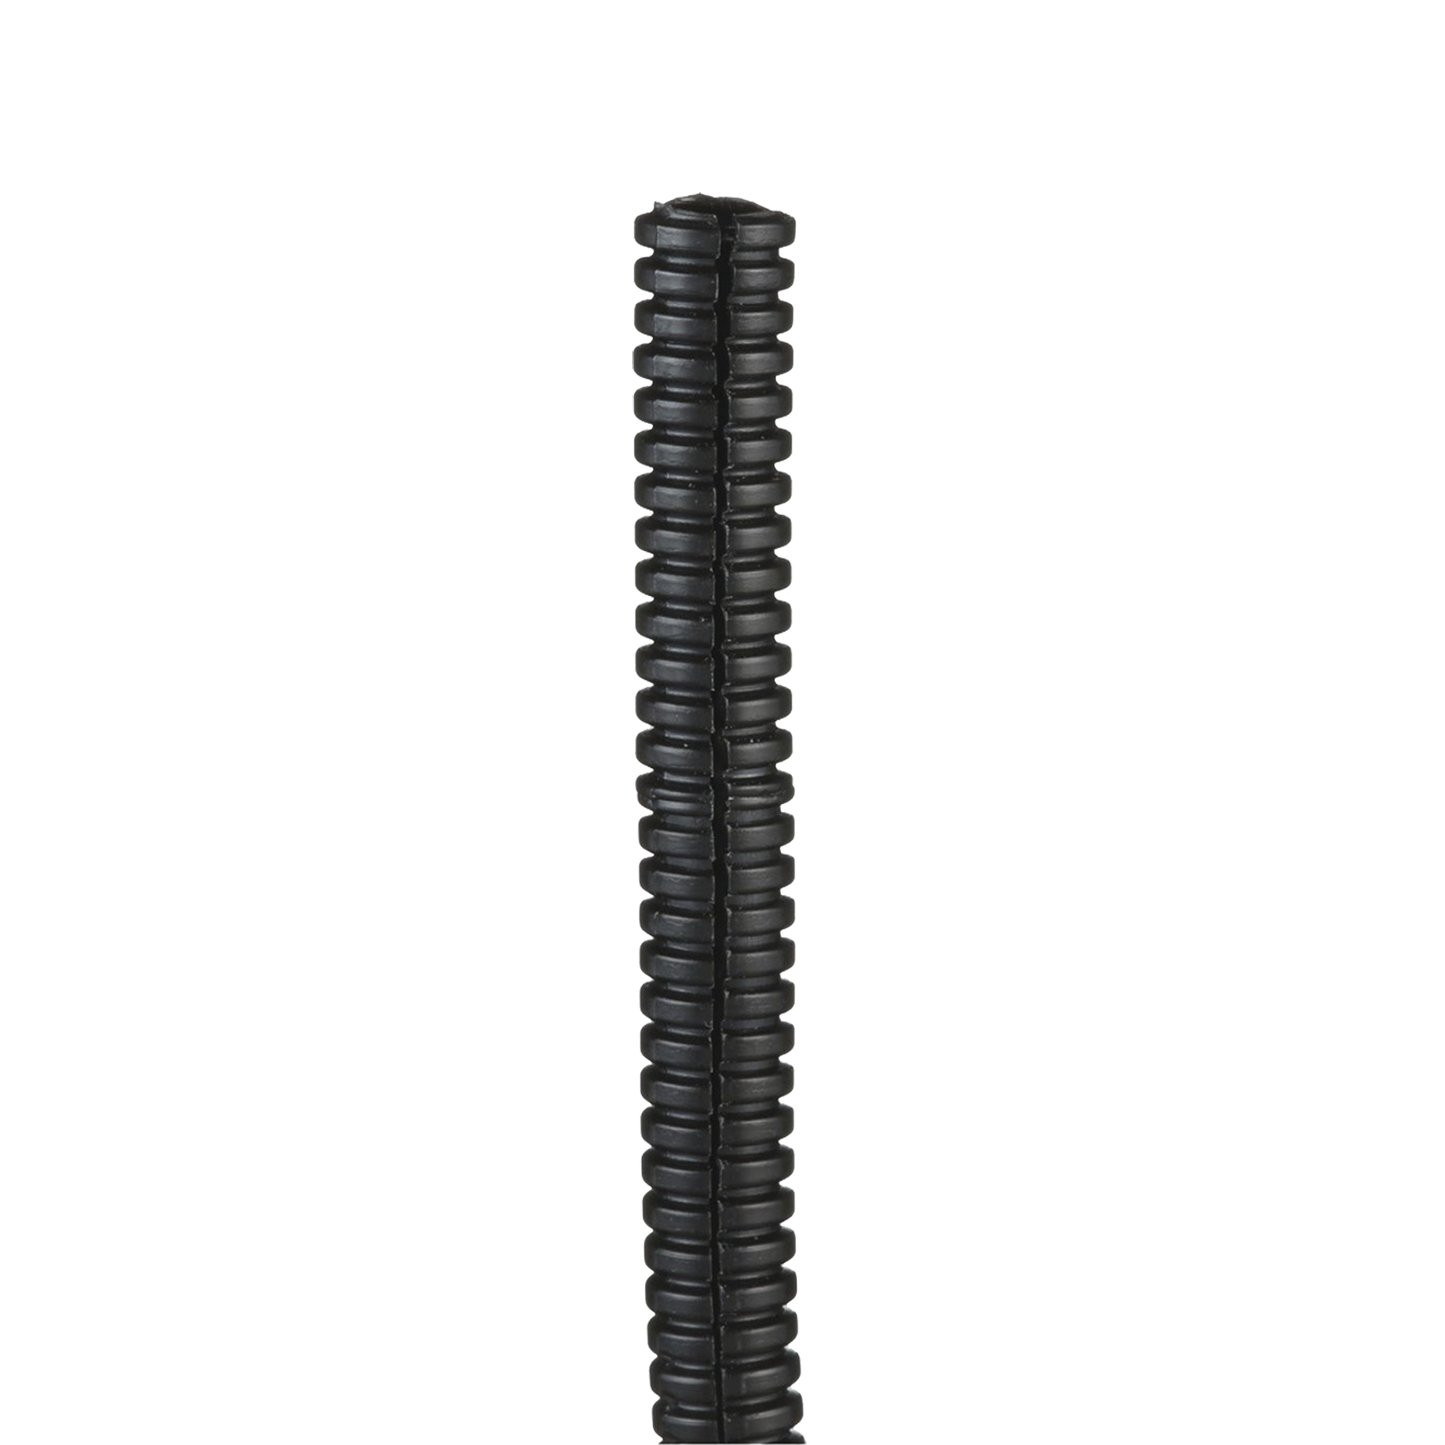 Tubo Corrugado Abierto para Protección de Cables, .50in (12.7 mm) de Diámetro, 30.5 m de Largo, Color Negro